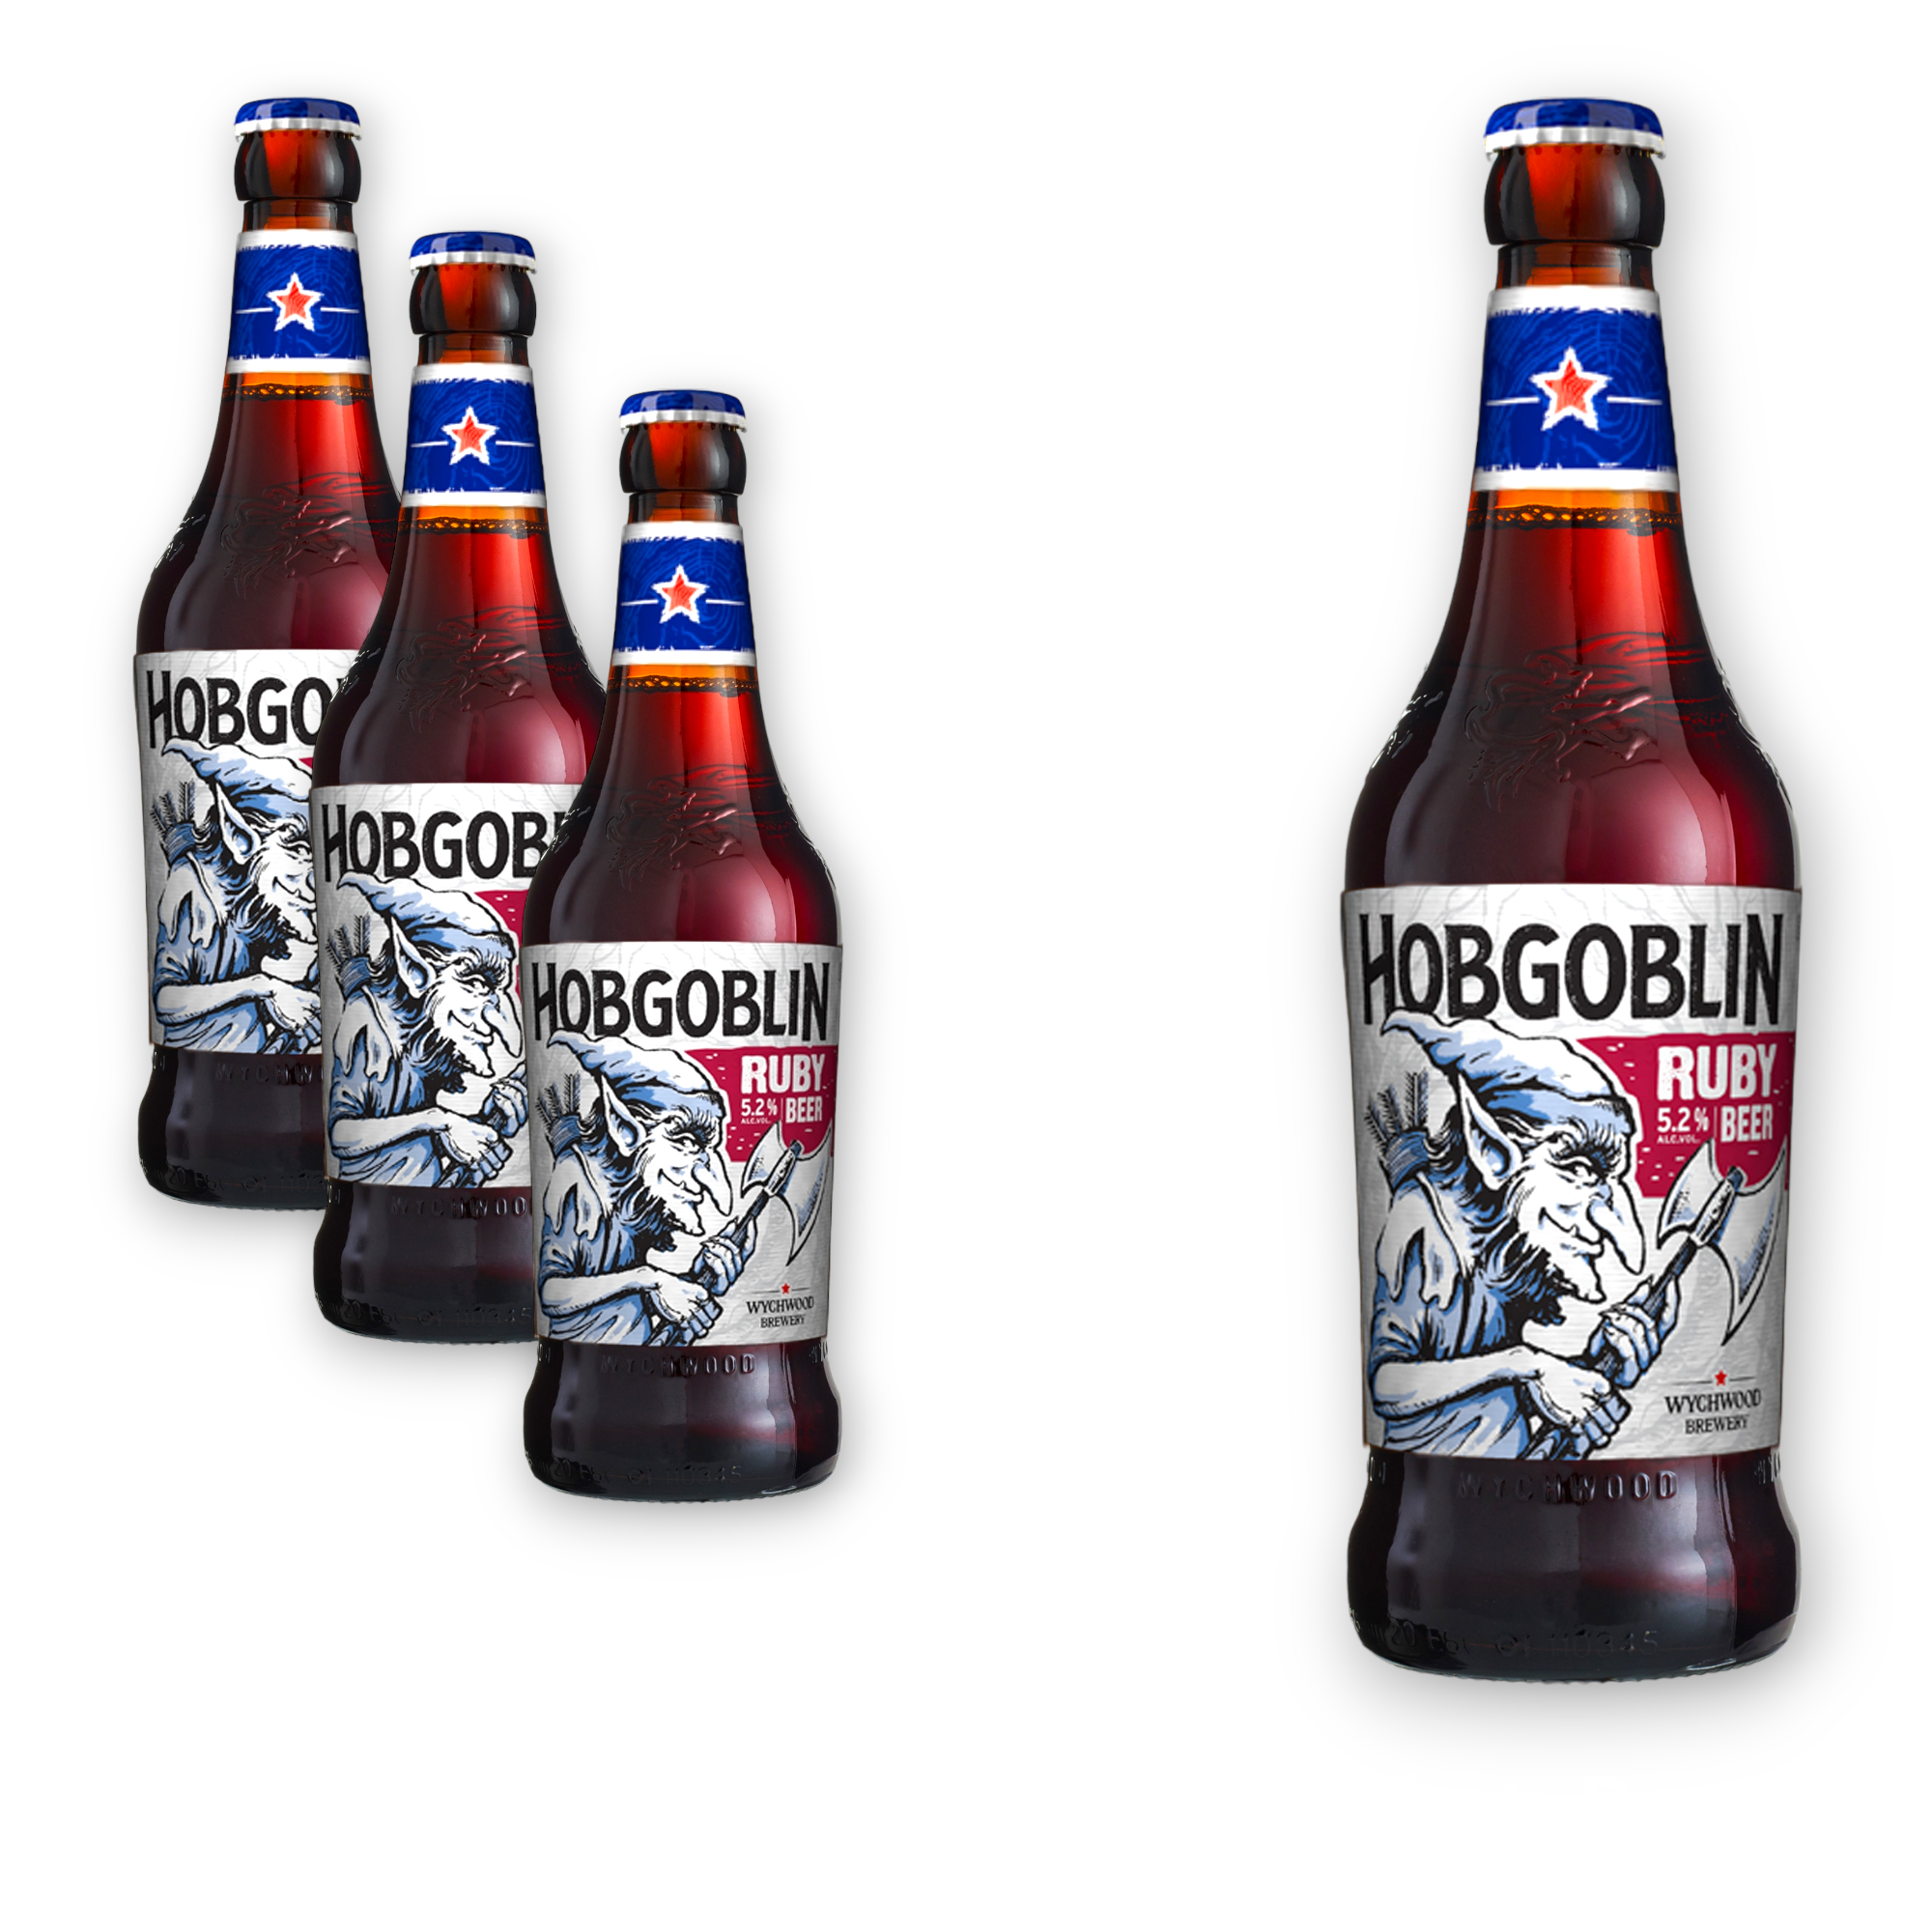 Wychwood Hobgoblin Ruby Beer 0,5l- Das legendäre Bier der Wychwood Brauerei mit 5,2% Vol.